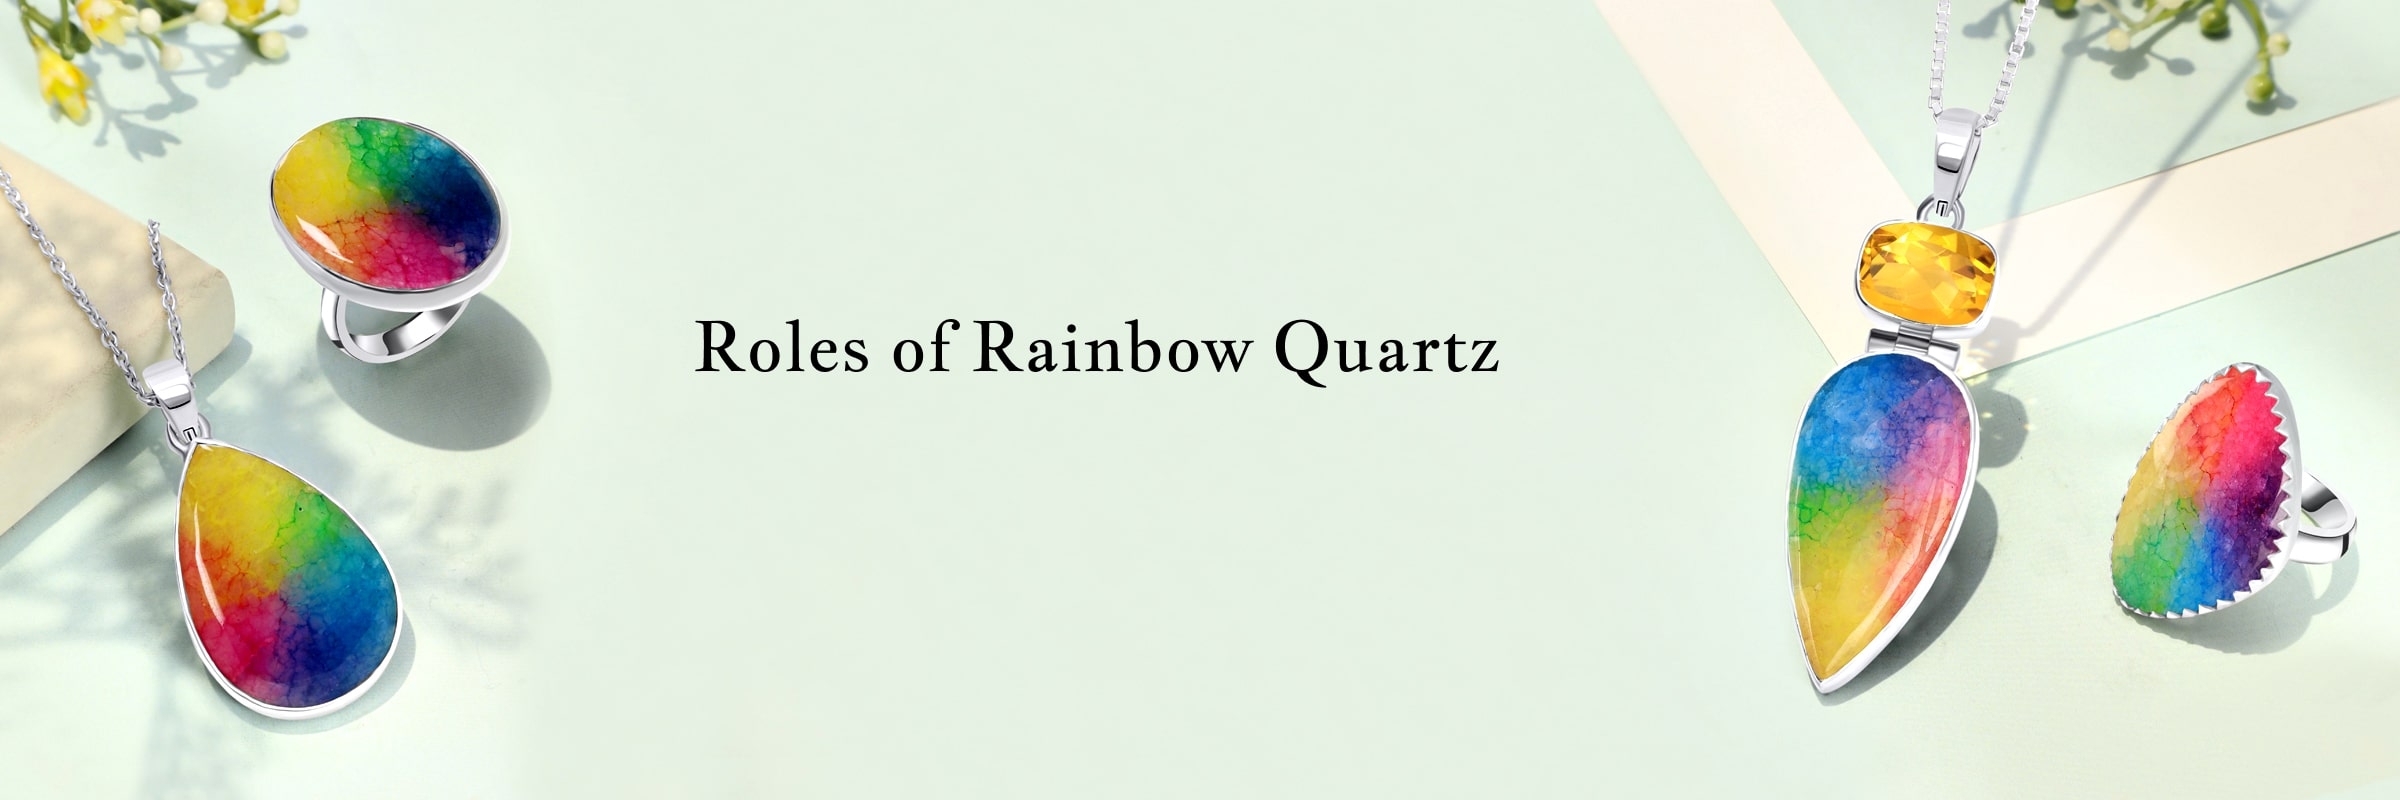 Purpose of Rainbow Quartz